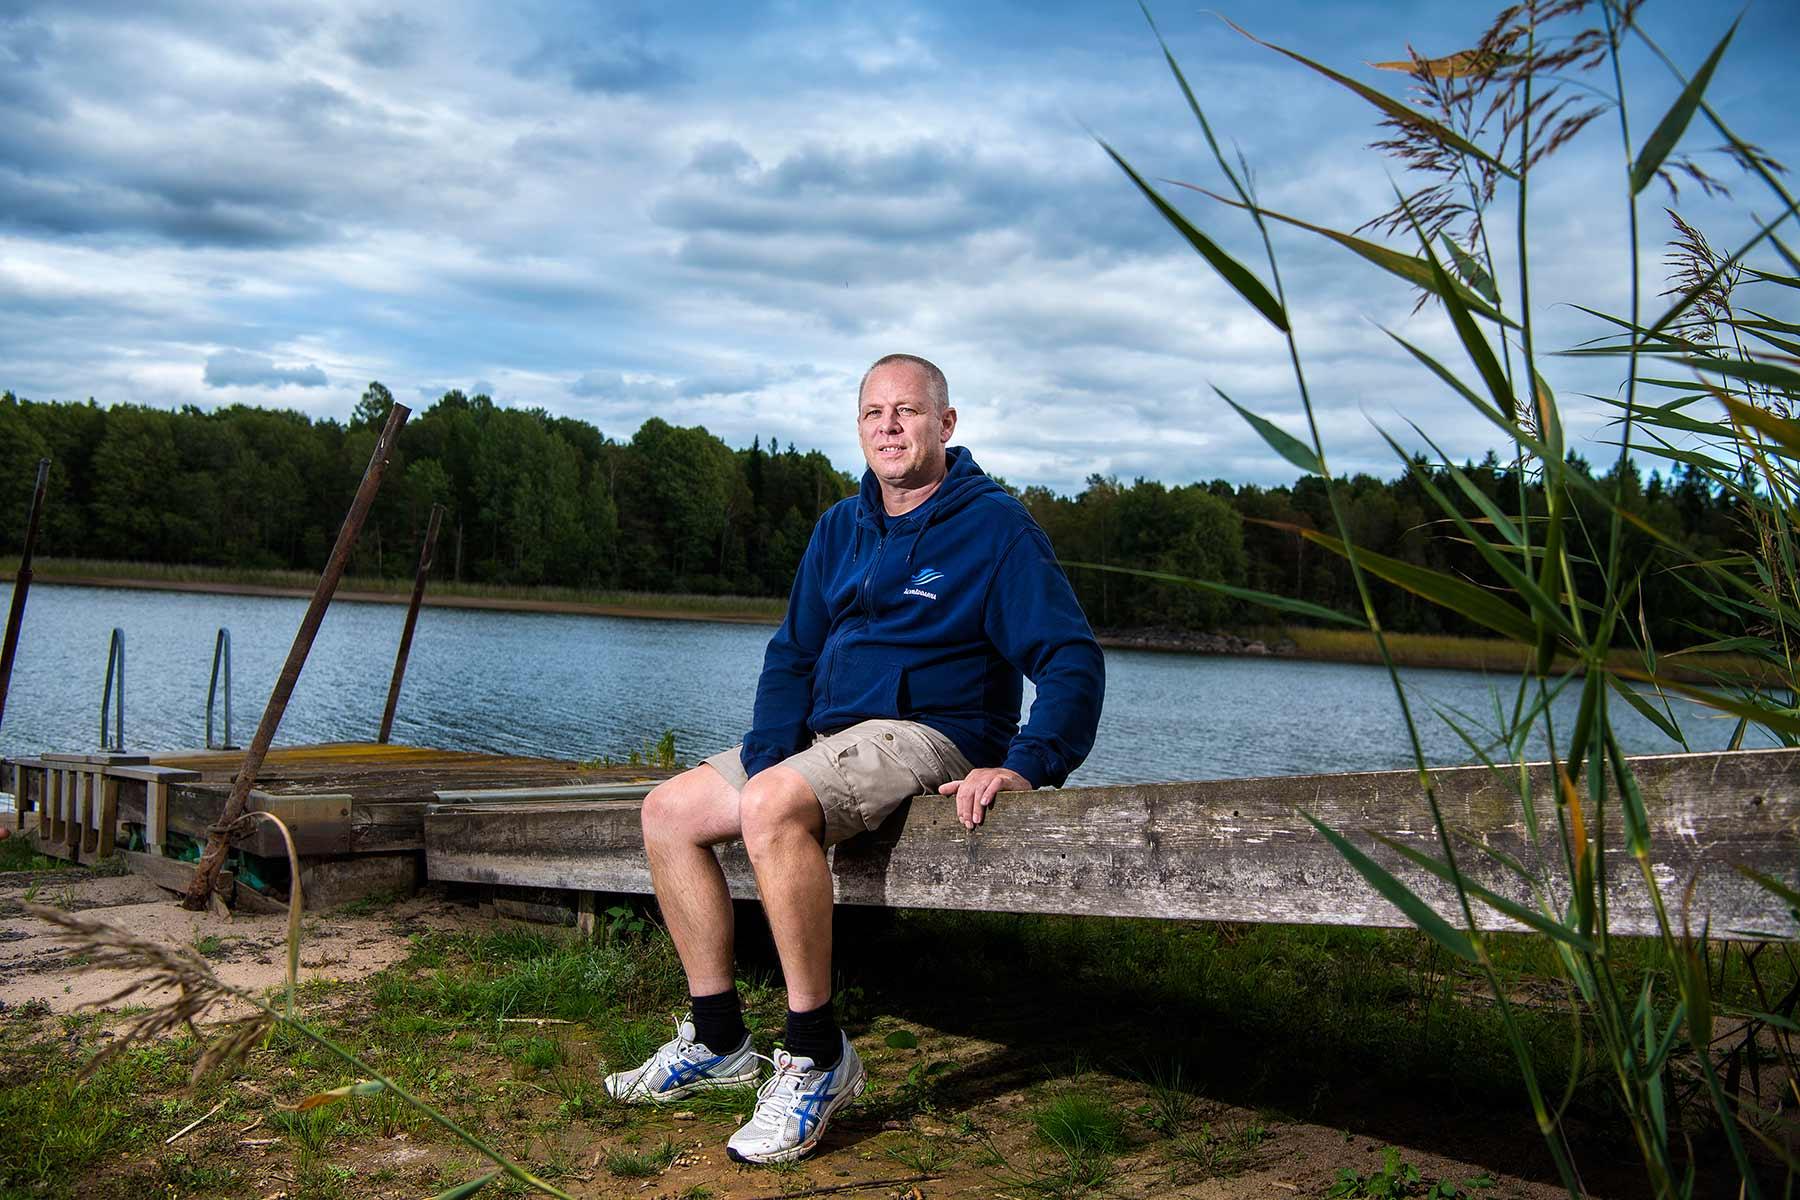 ”Som det ser ut nu är det ett katastrofområde. Det är miljöförstöring som saknar motstycke”, säger Tino Åberg som lagt ner många år på att rädda sjön.